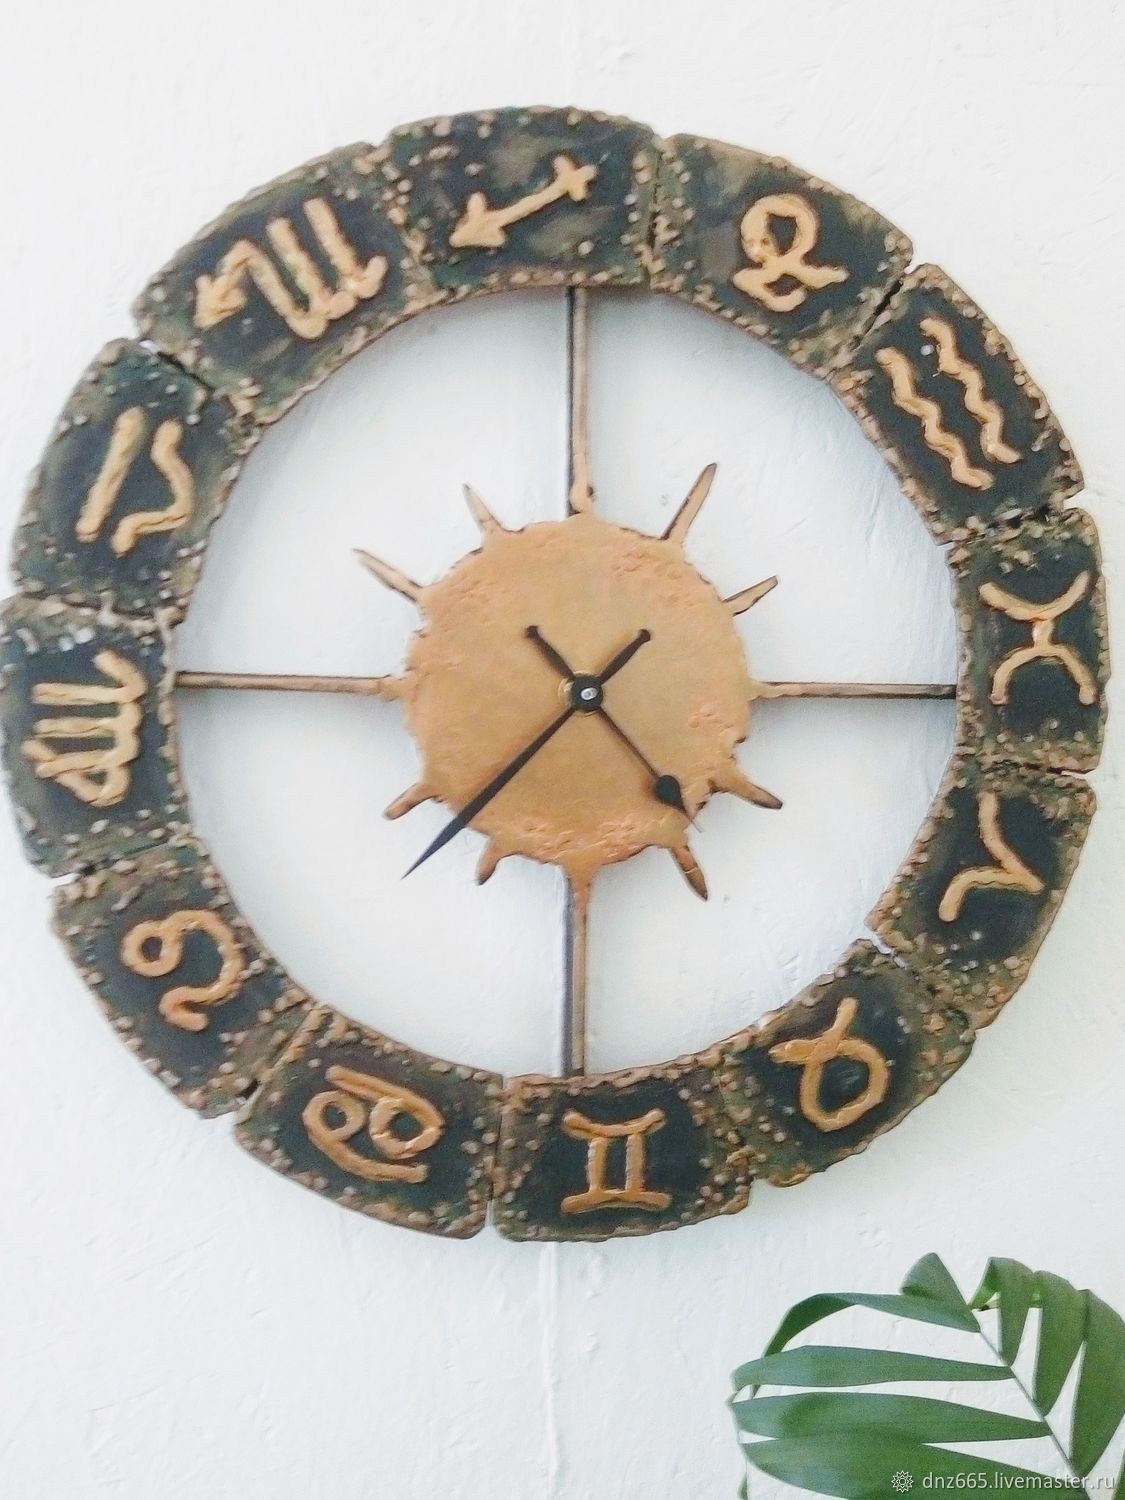 Часы зодиак. Настенные часы "знаки зодиака". Часы настенные Зодиак. Часы со знаками зодиака. Часы настенные со знаками зодиака на циферблате.